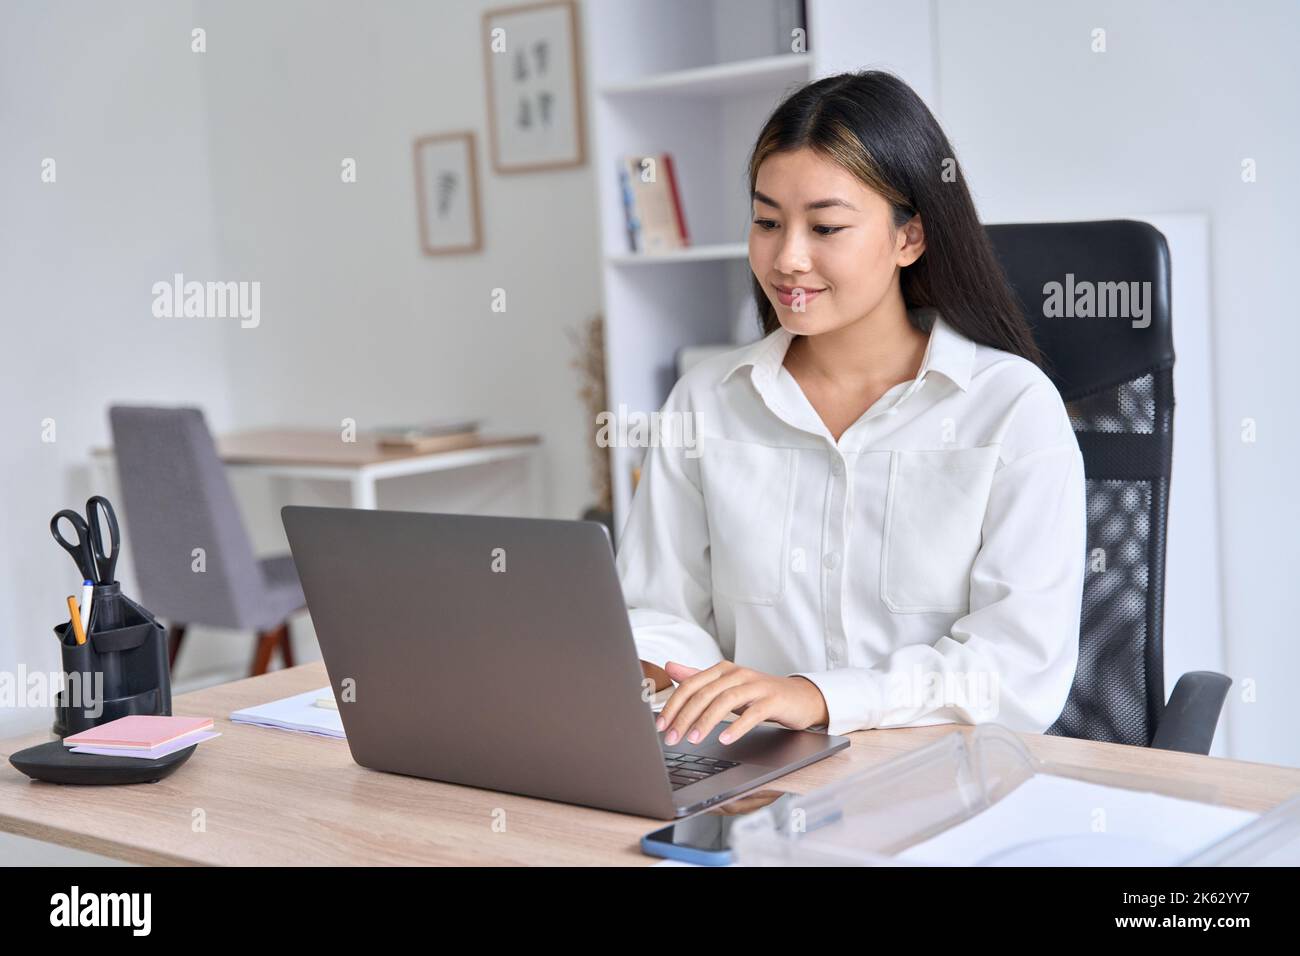 Jeune femme asiatique travaillant sur un ordinateur portable tenant une conférence en ligne de réunion d'affaires Banque D'Images